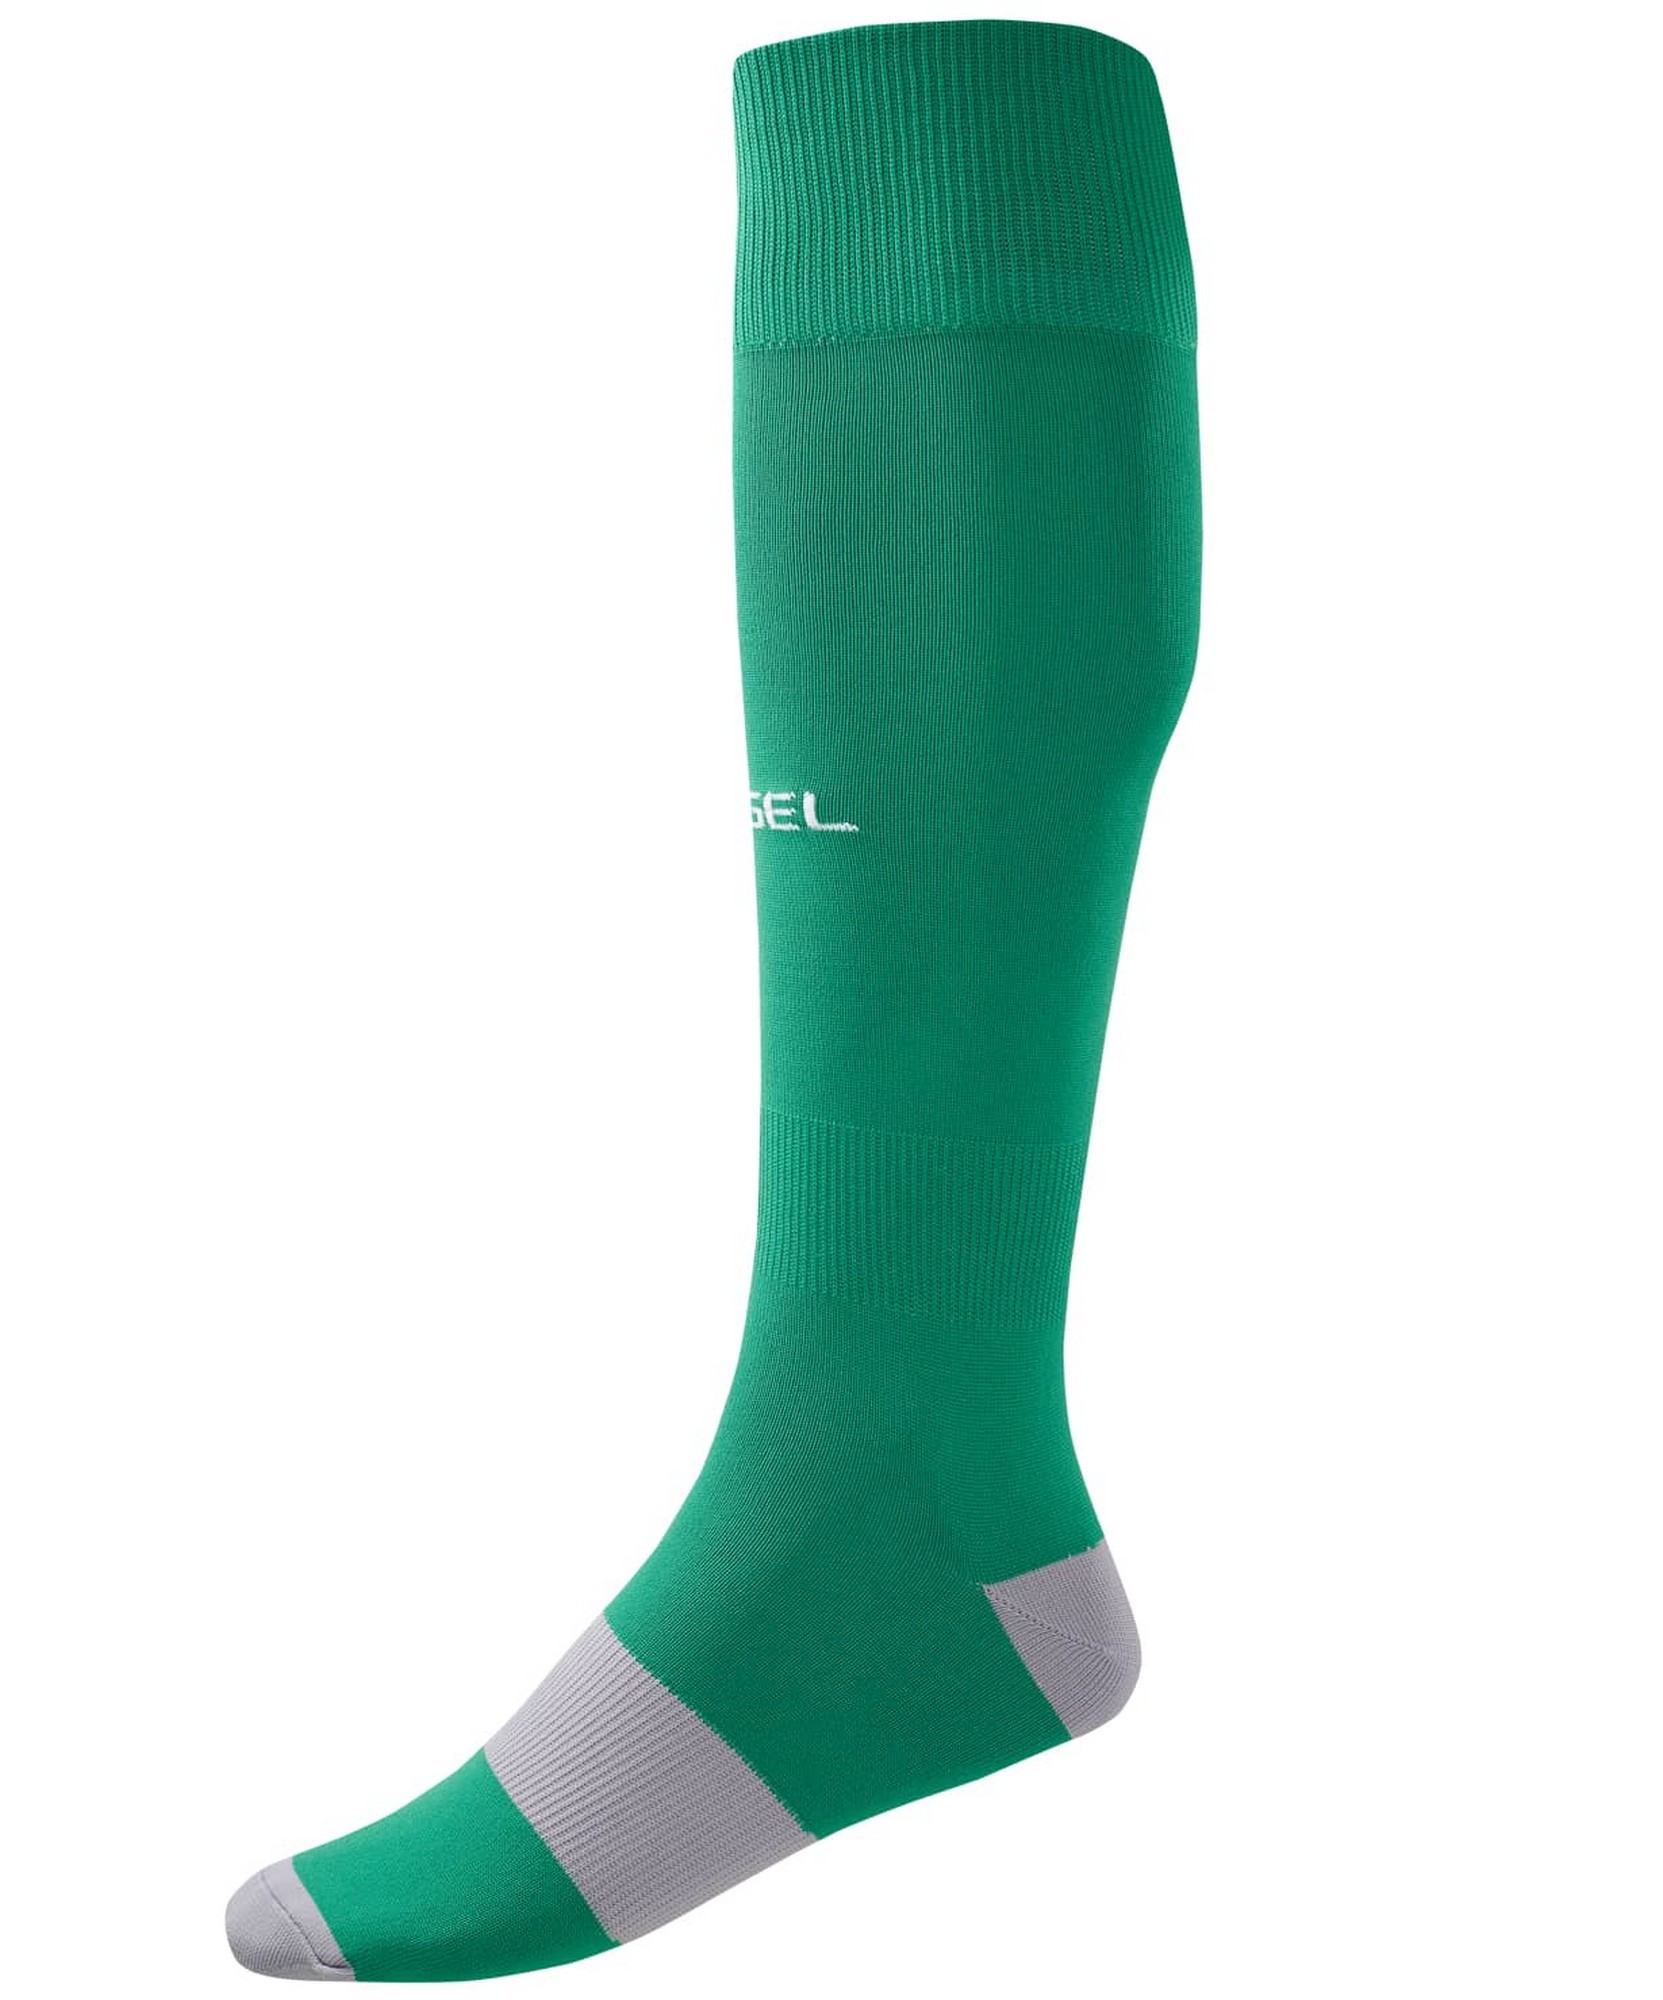 Купить Гетры футбольные Jögel Camp Basic Socks, зеленыйсерыйбелый,